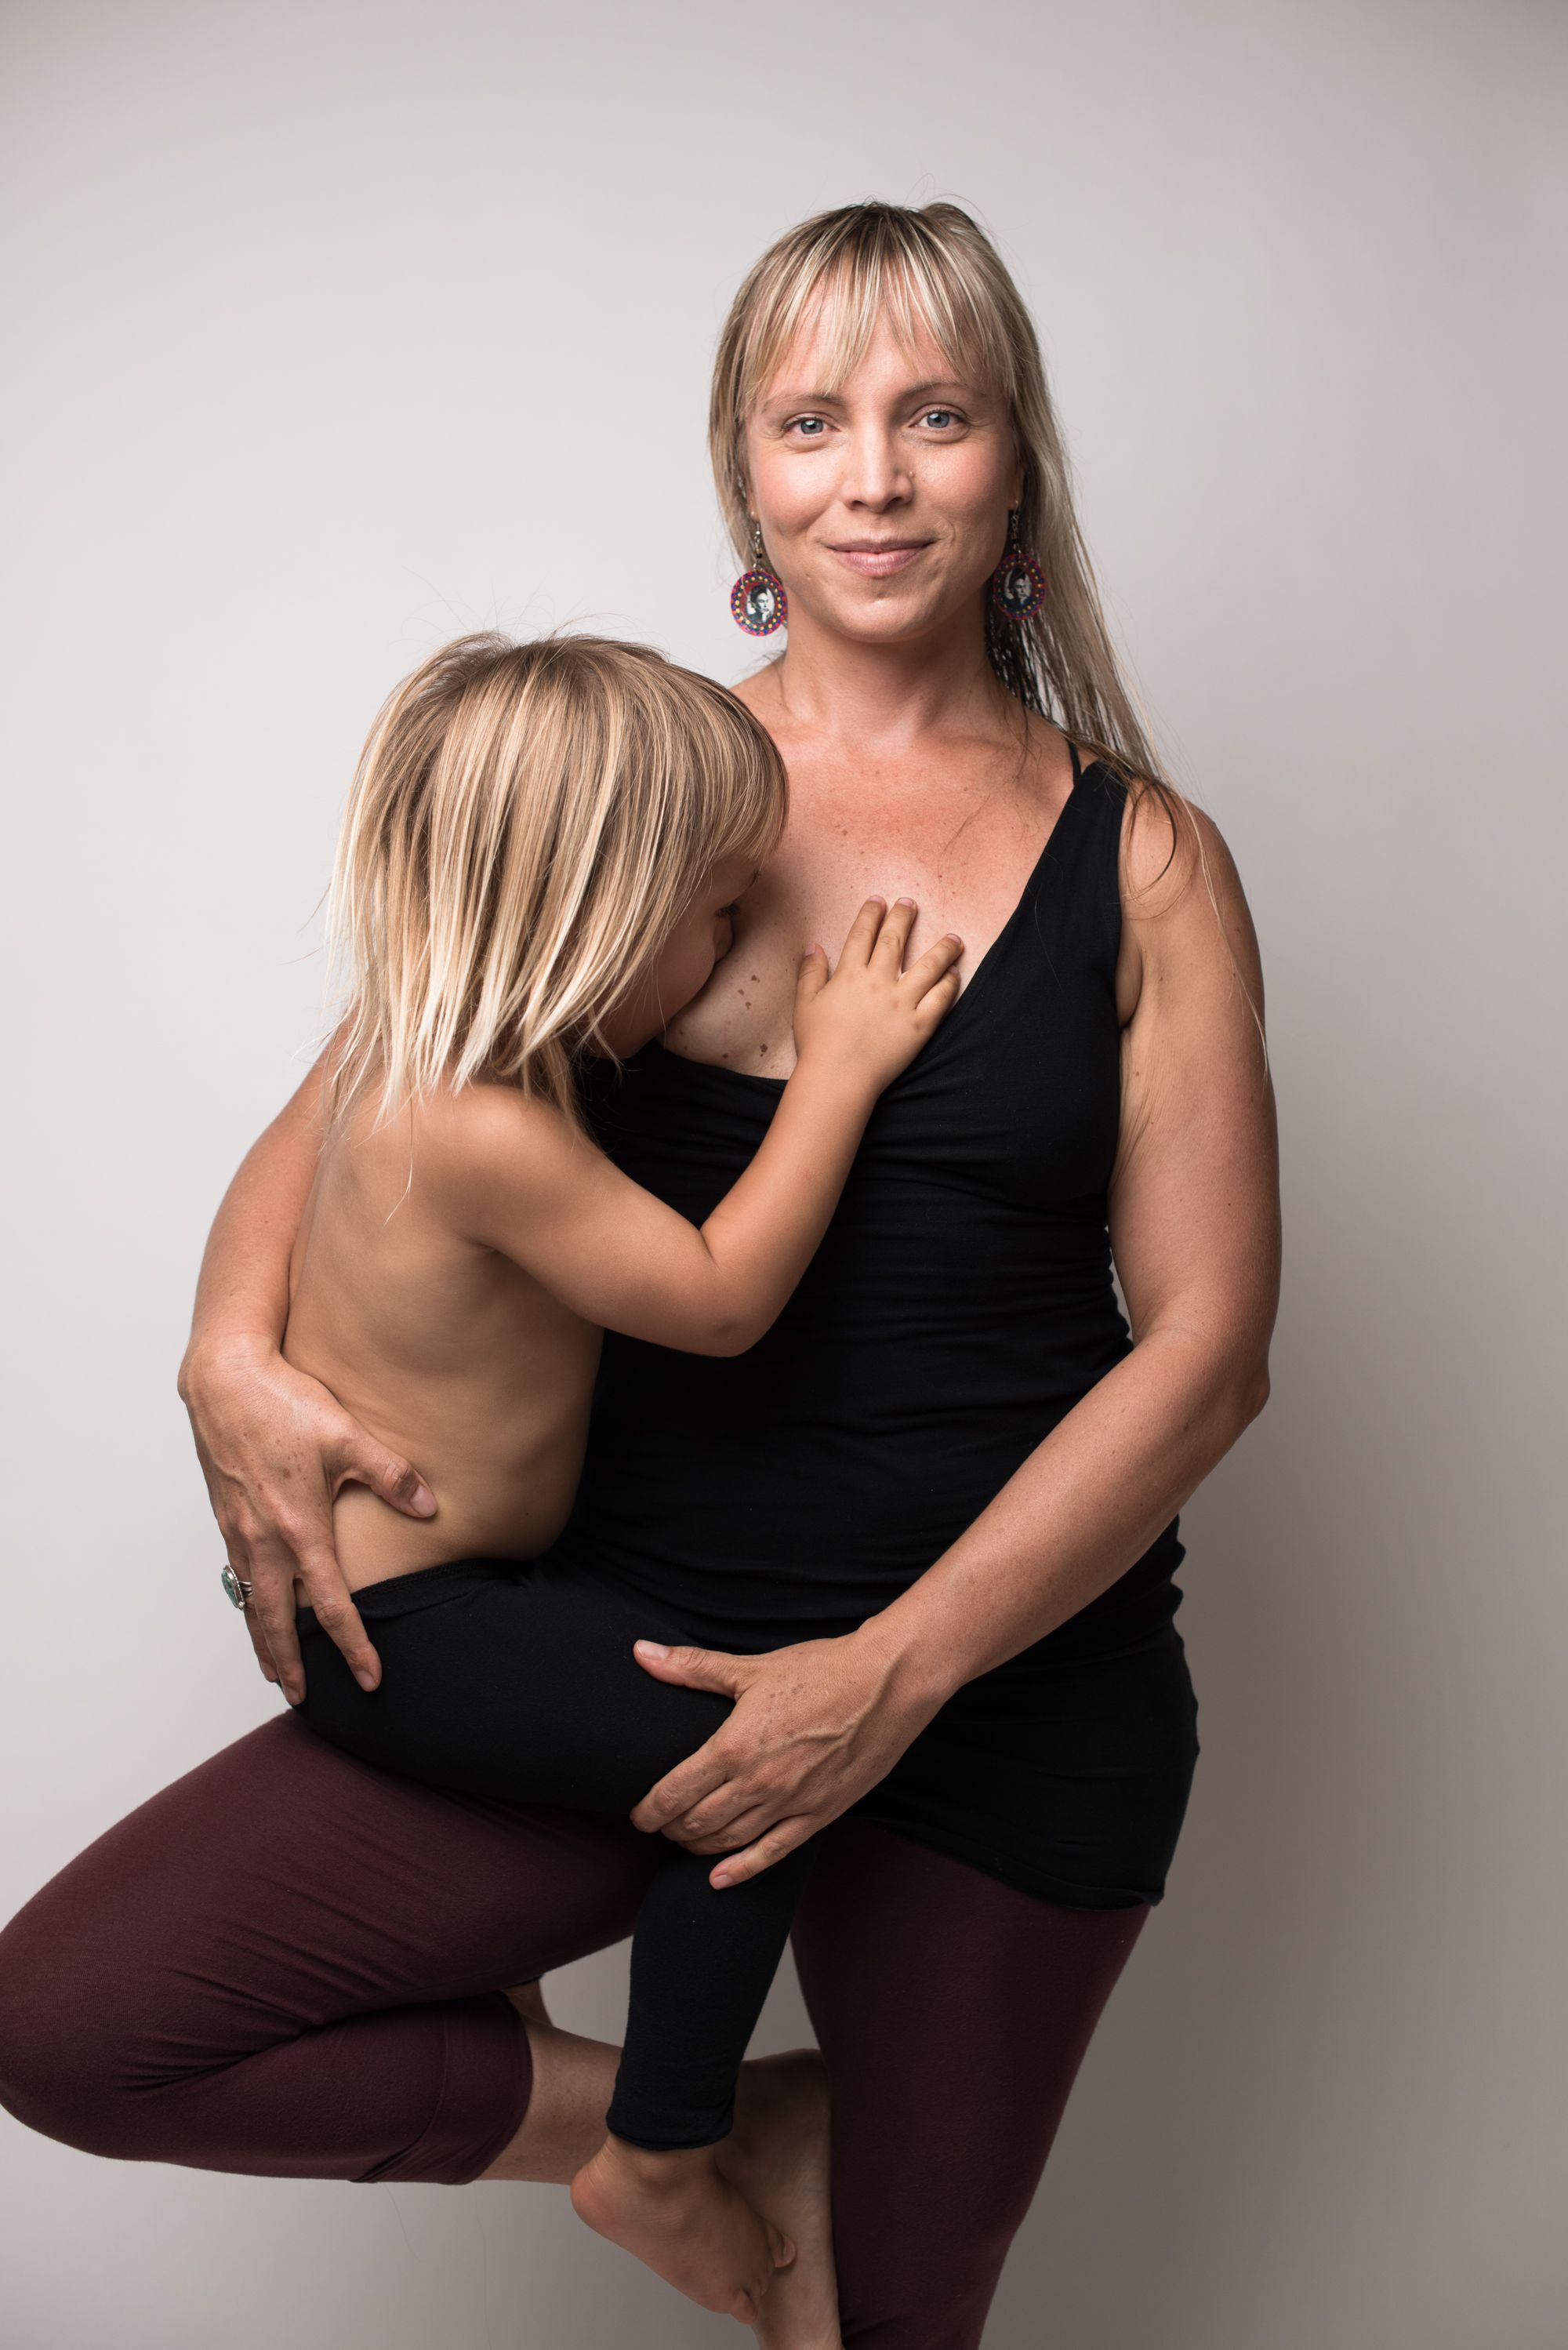 Дочери страпонят. Фотограф Джейд Билл Breastfeeding. Фотопроект Джейд Билл. Кормление грудью взрослых детей.